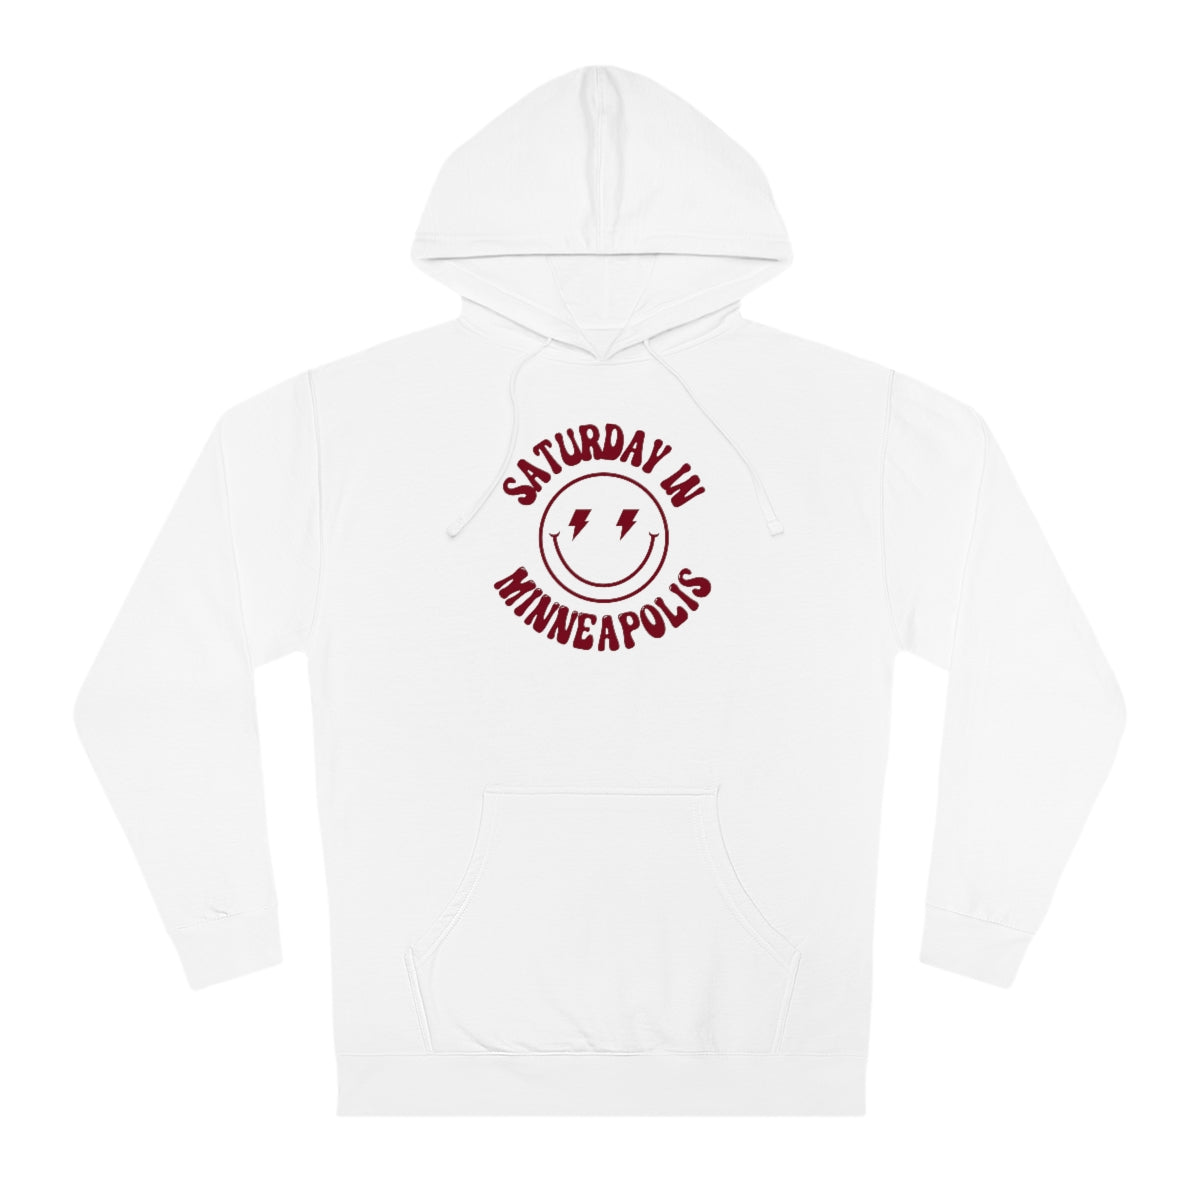 Smiley Minneapolis Hooded Sweatshirt - GG - ITC